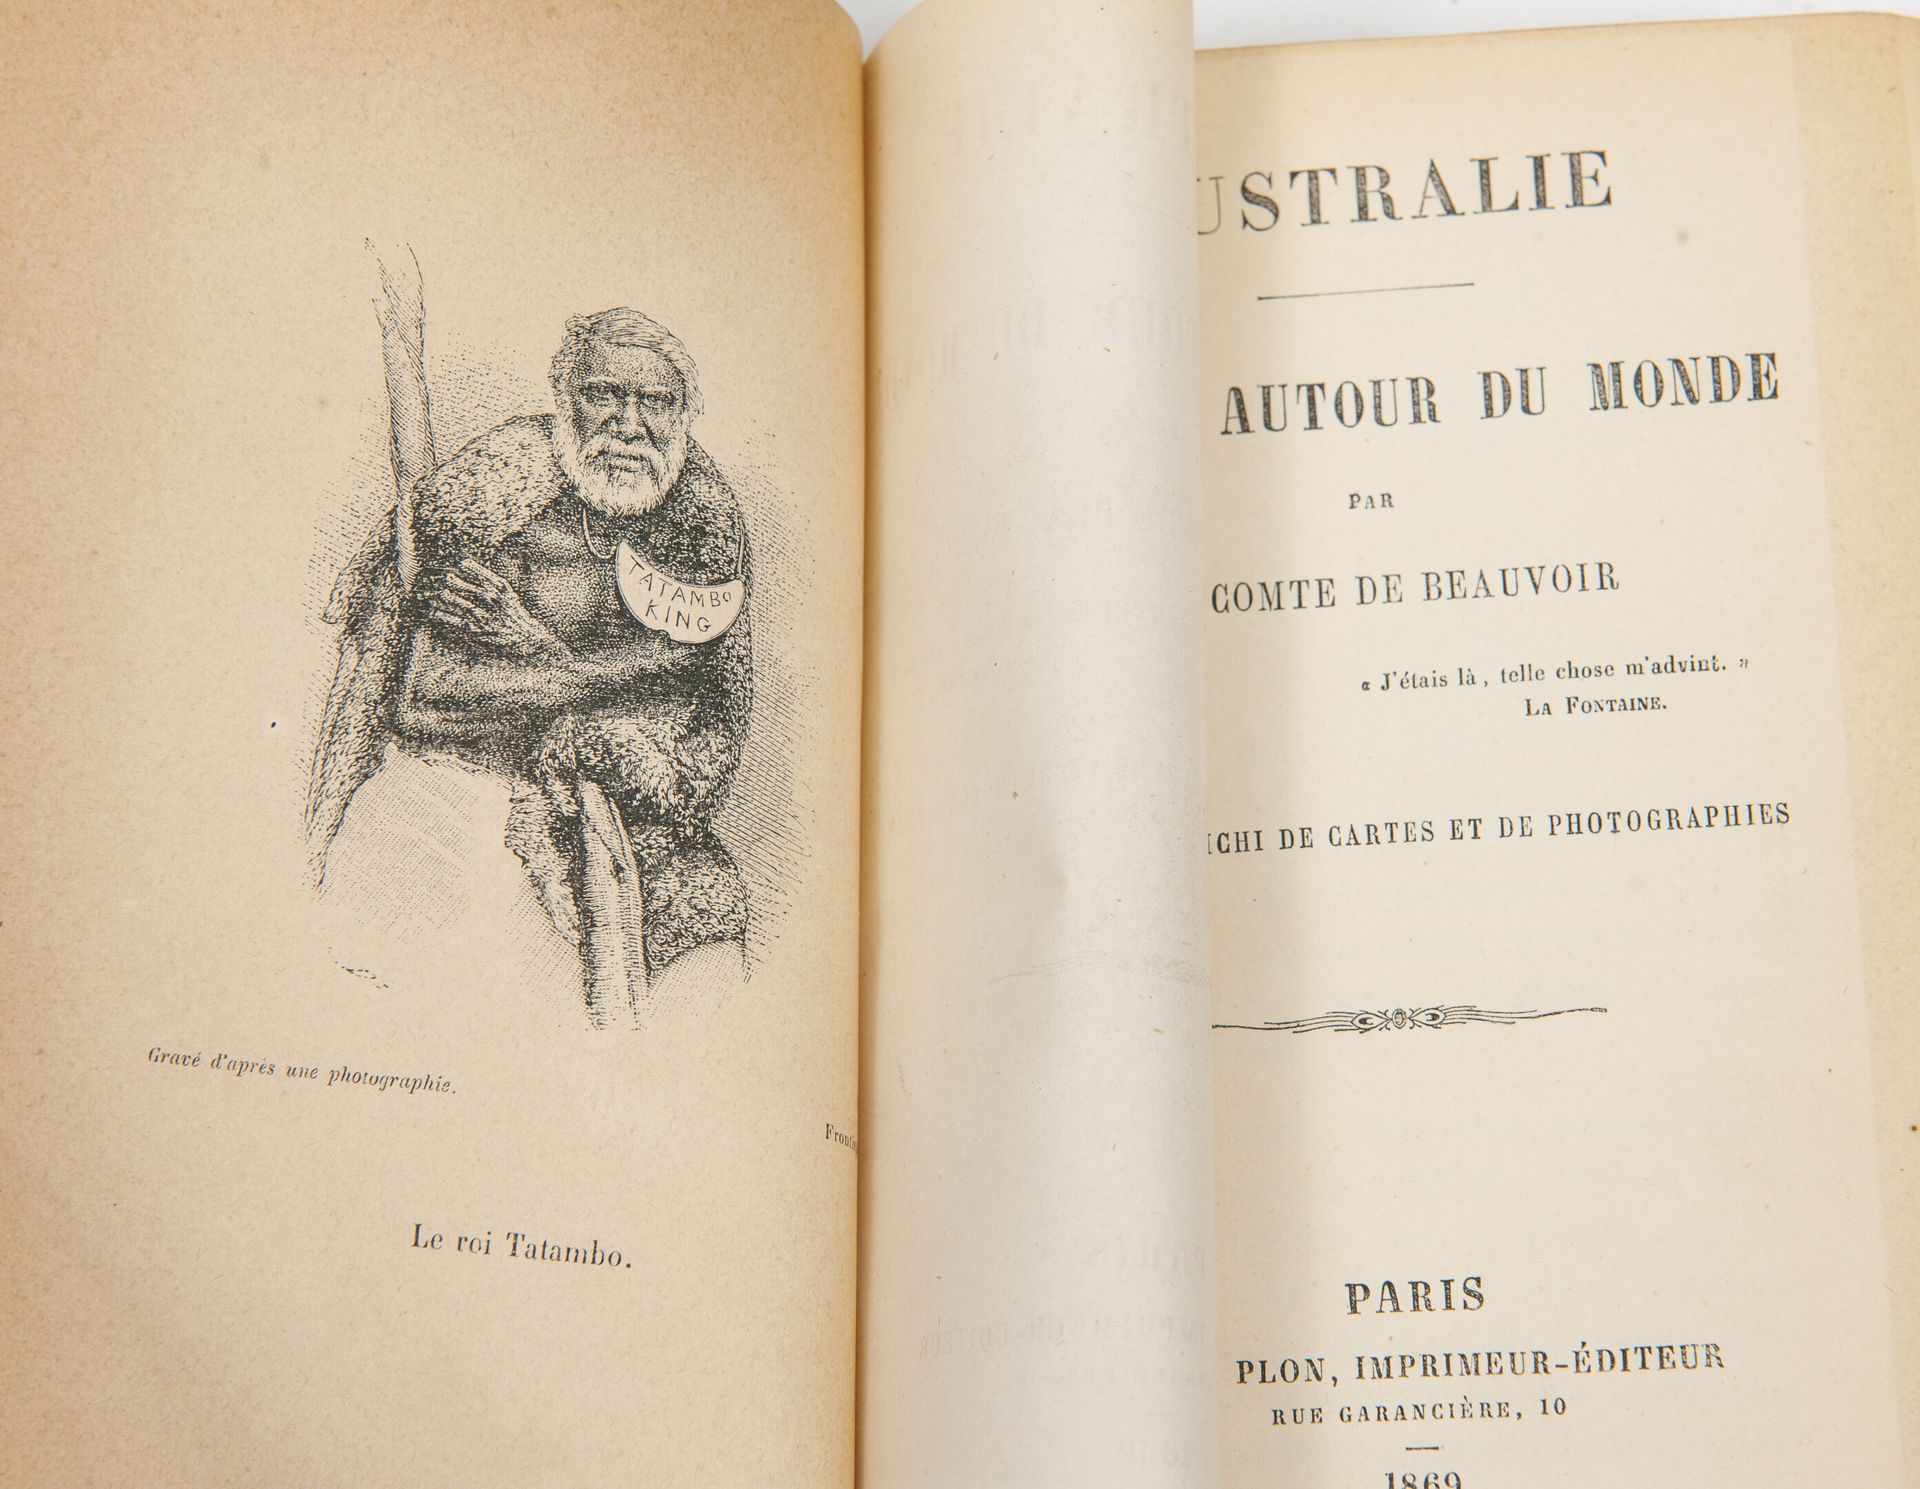 BEAUVOIR (Ludovic, Cte de) Voyages autour du monde.

Paris, Plon, 1869-1872, 3 v&hellip;